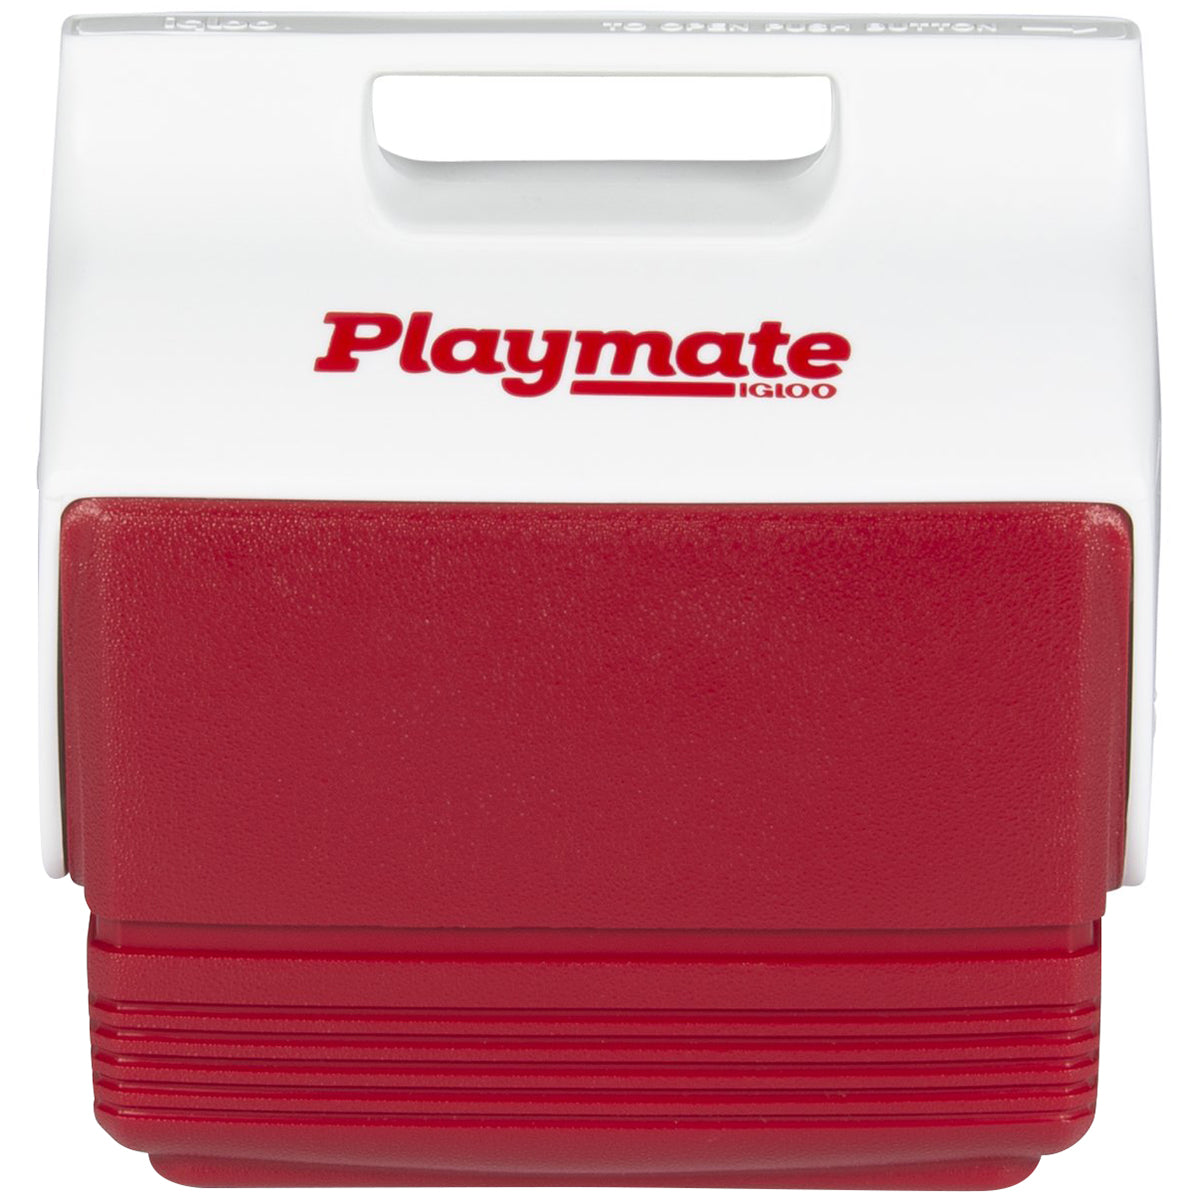 IGLOO Playmate Mini 4 qt. Hard Cooler - Red/White IGLOO